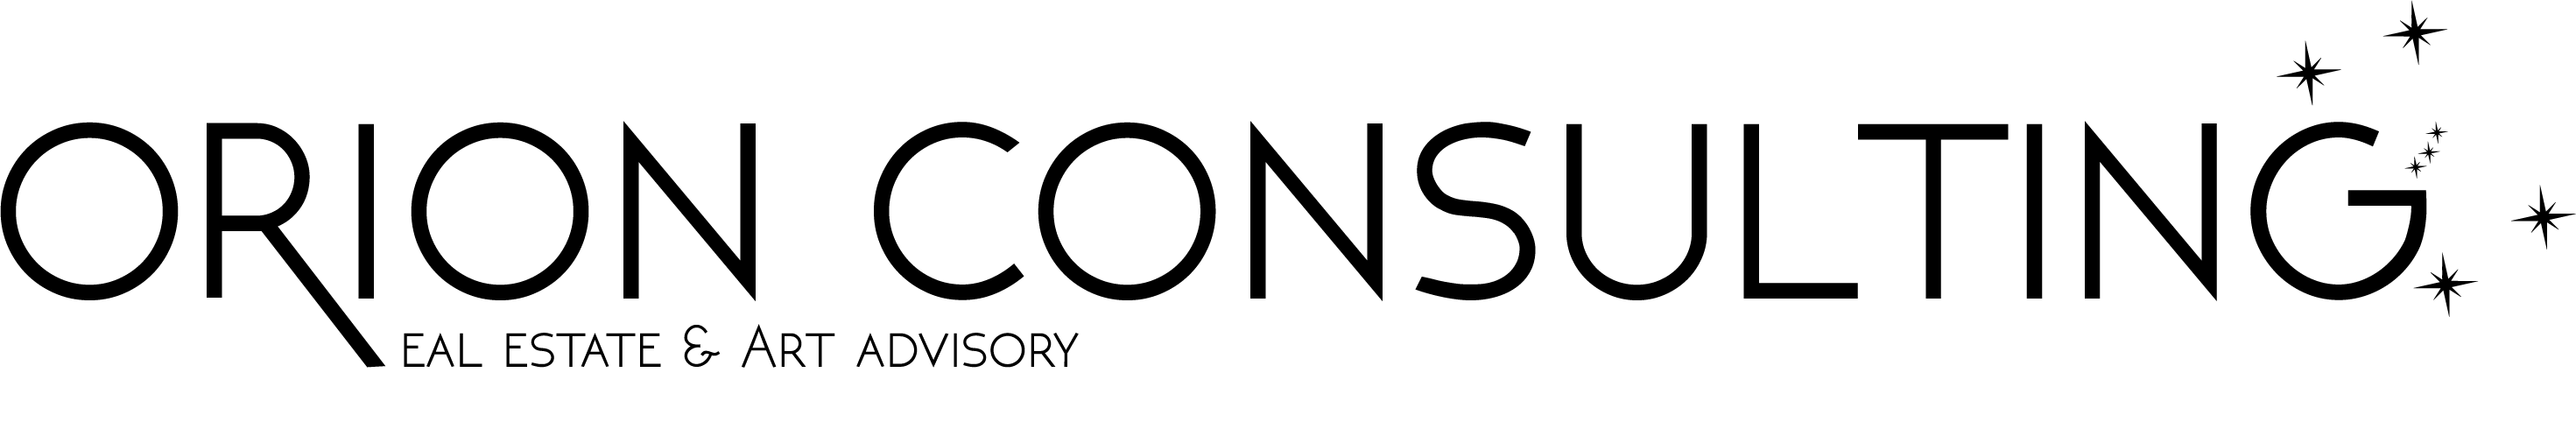 logo Orion consulting nero su sfondo trasparente